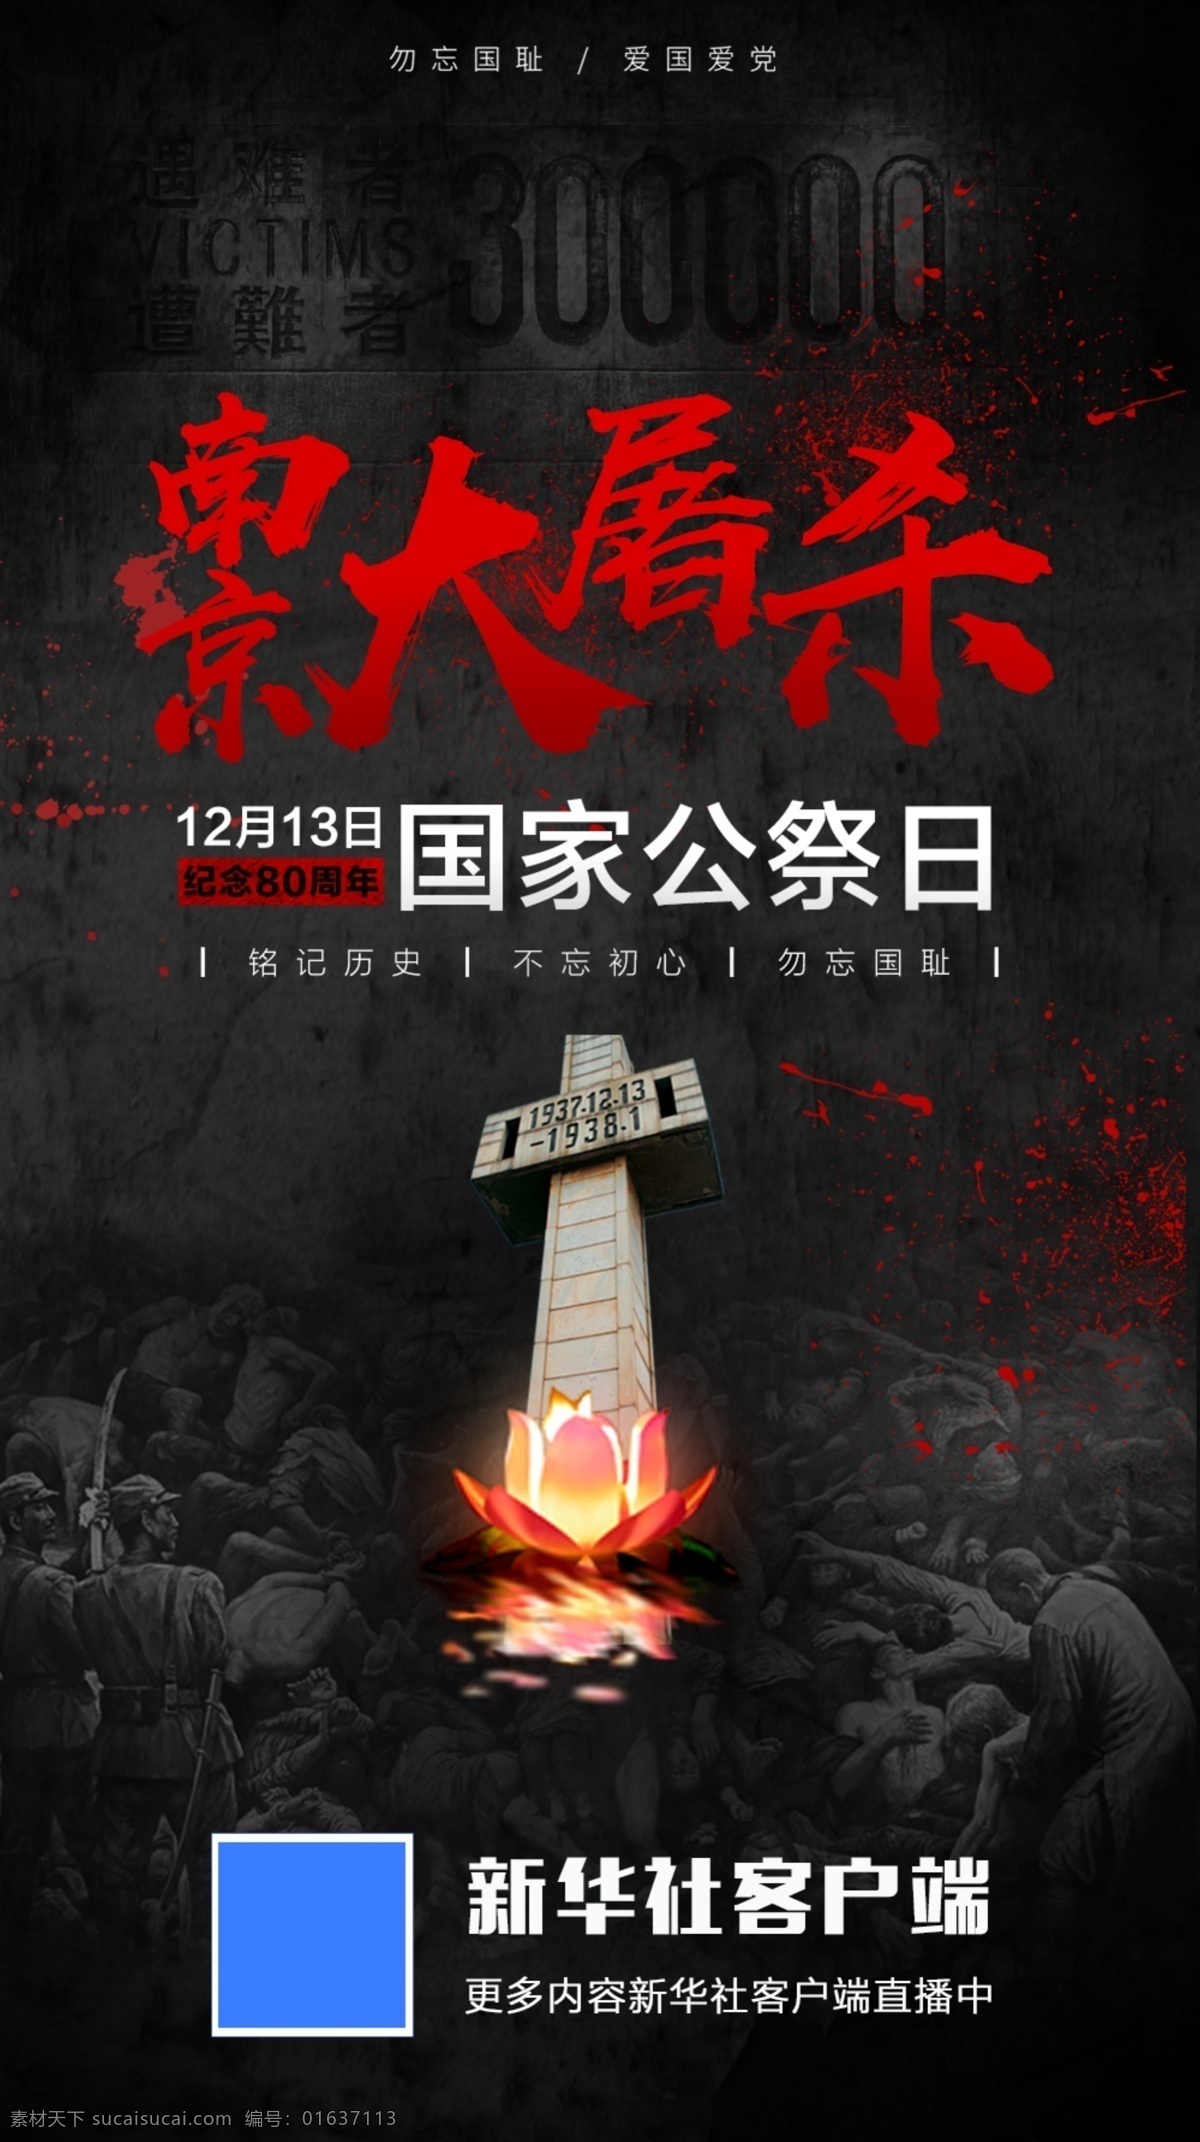 国家公祭日 南京大屠杀 几年80周年 铭记历史 不忘初心 凝望国耻 节日海报 招贴设计